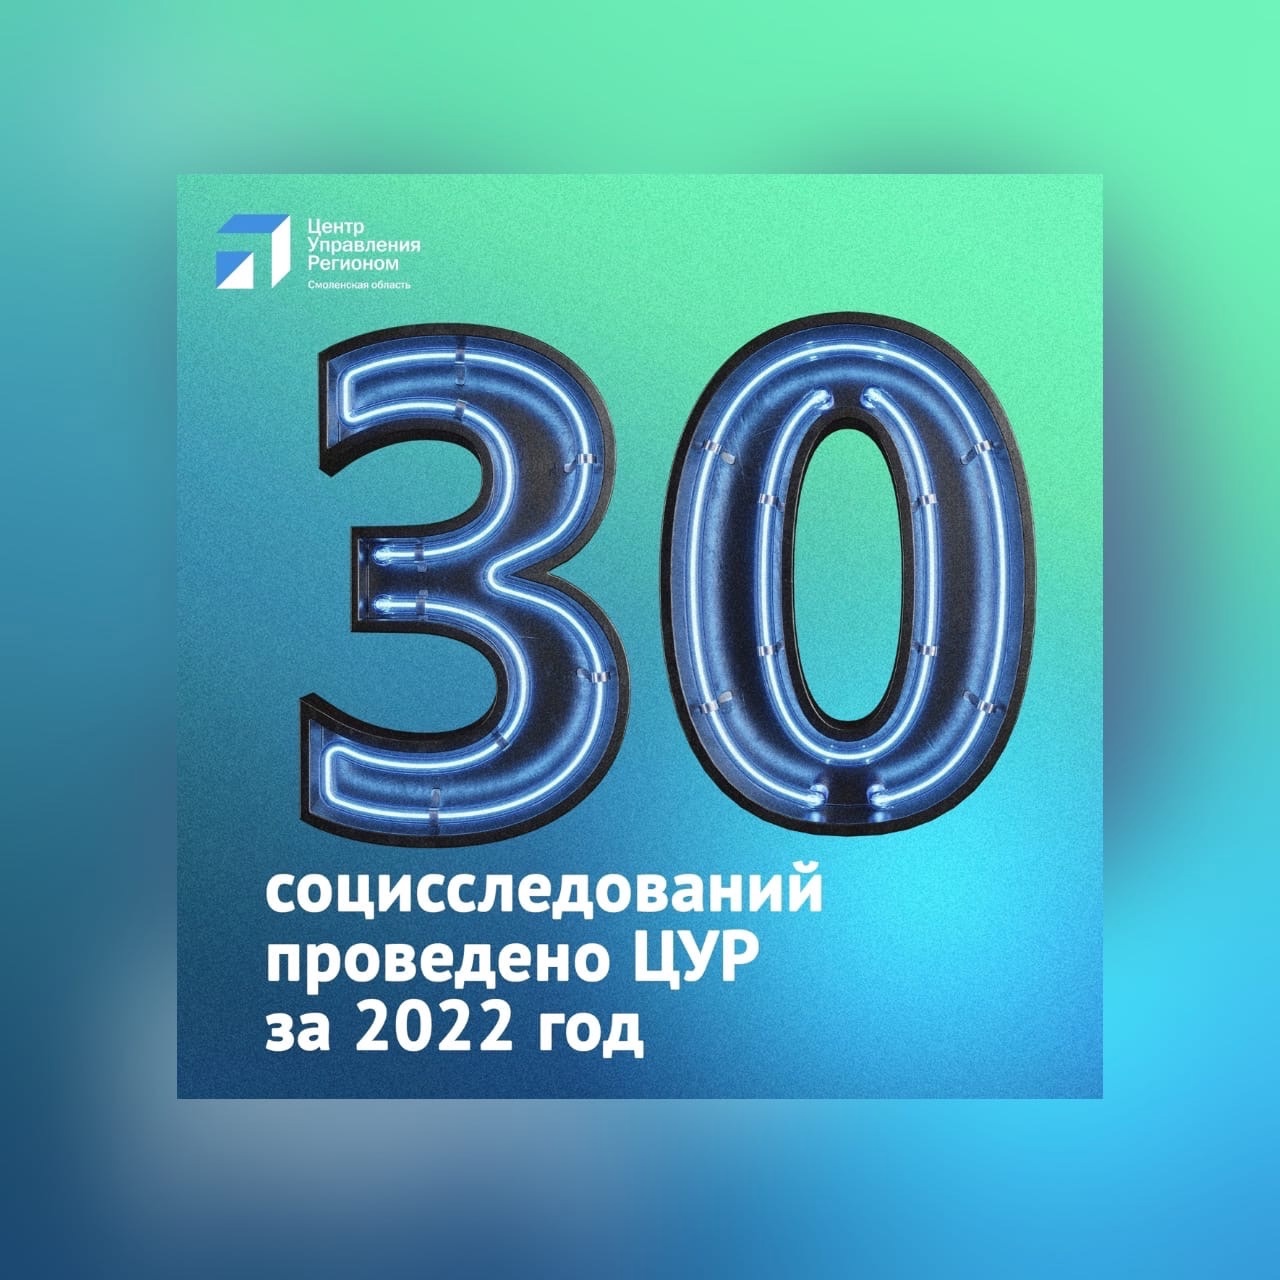 ЦУР Смоленской области в 2022 году провел 30 социологических исследований